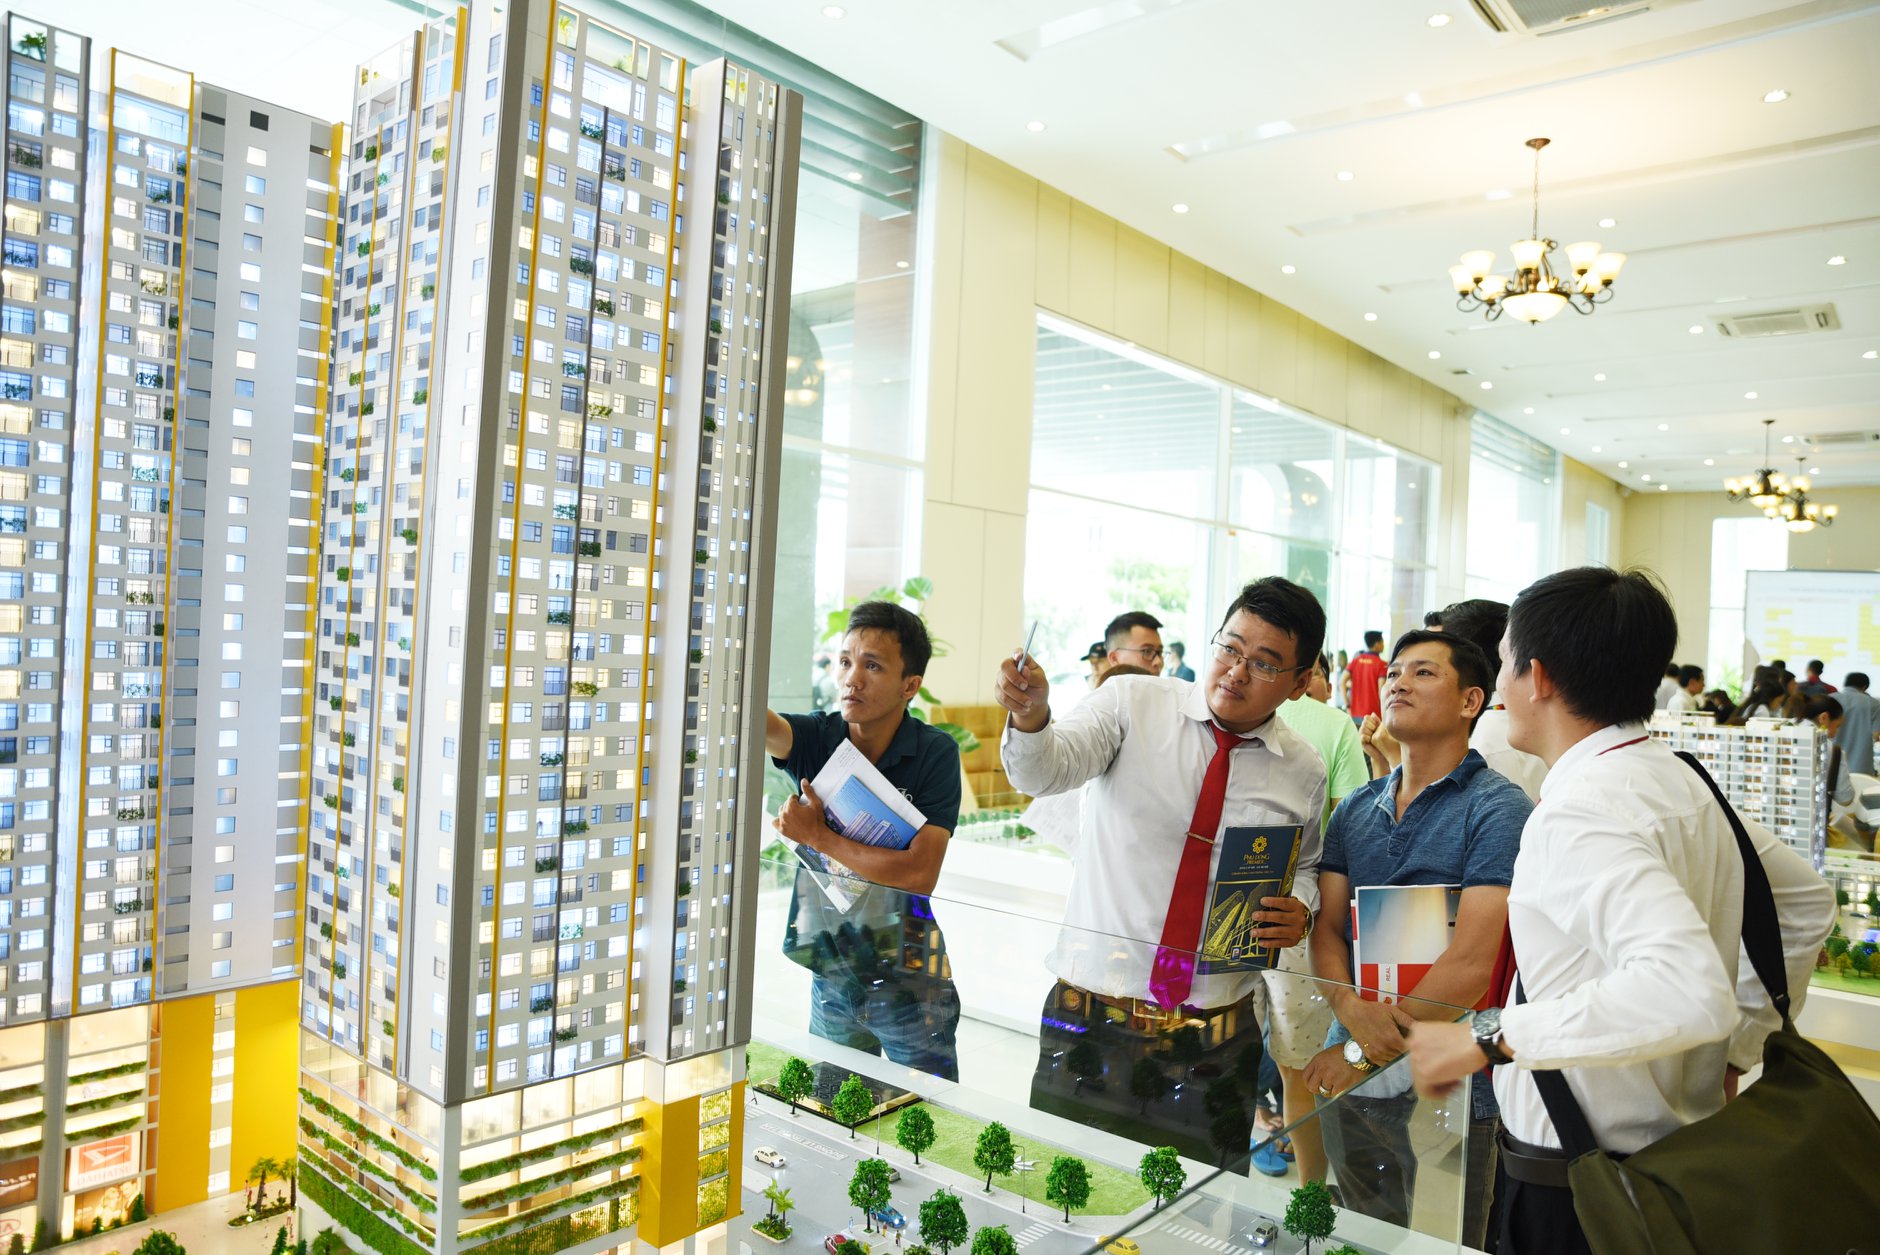 Khách hàng đang tìm hiểu dự án Phú Đông Prermier - dự án căn hộ giá rẻ tại Đông Bắc Sài Gòn